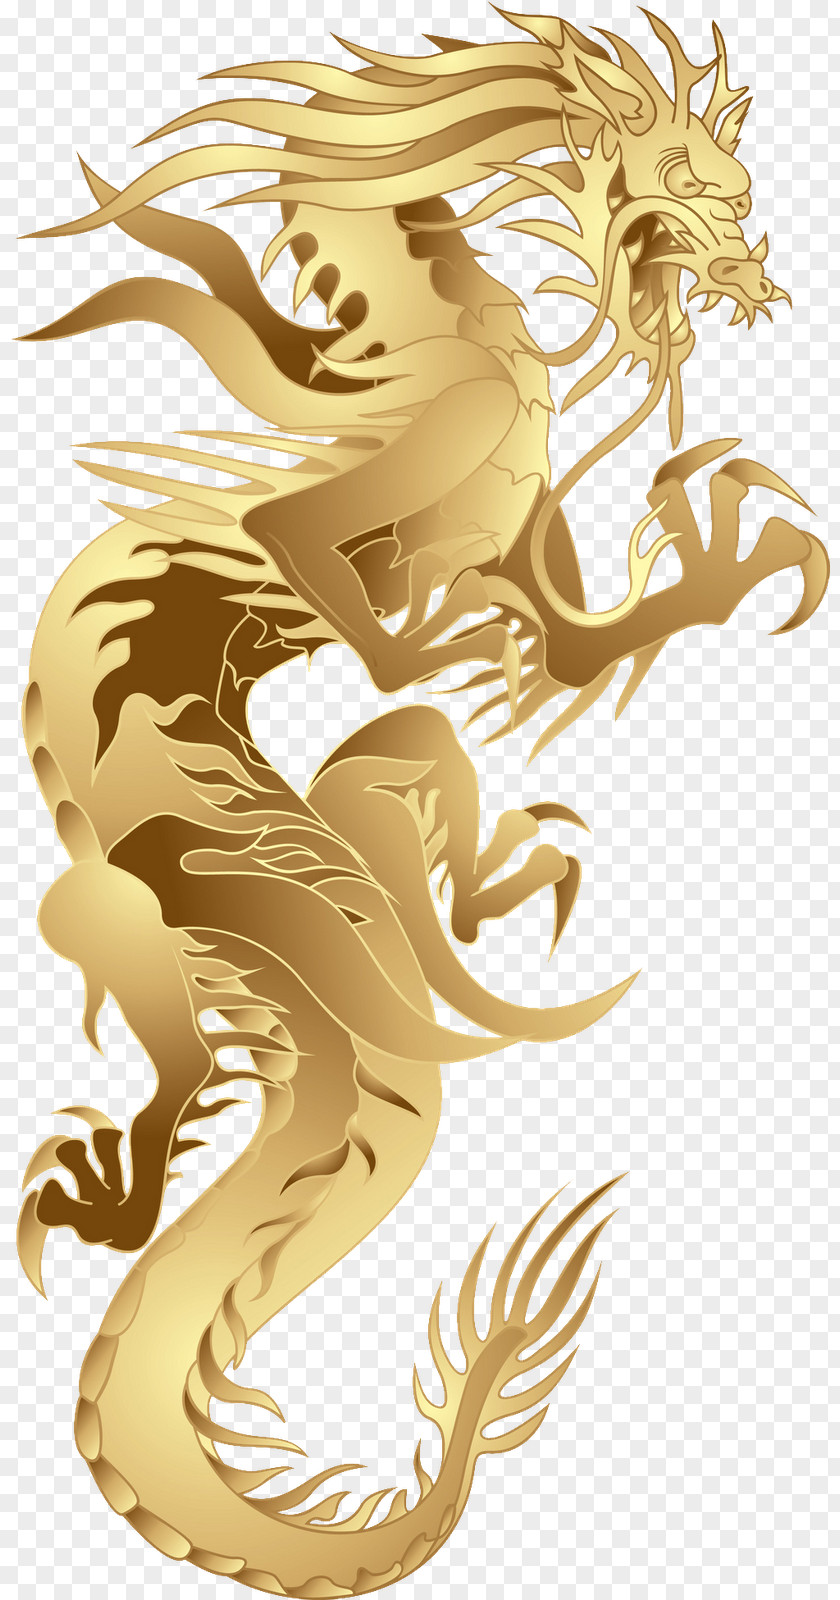 China Chinese Dragon PNG